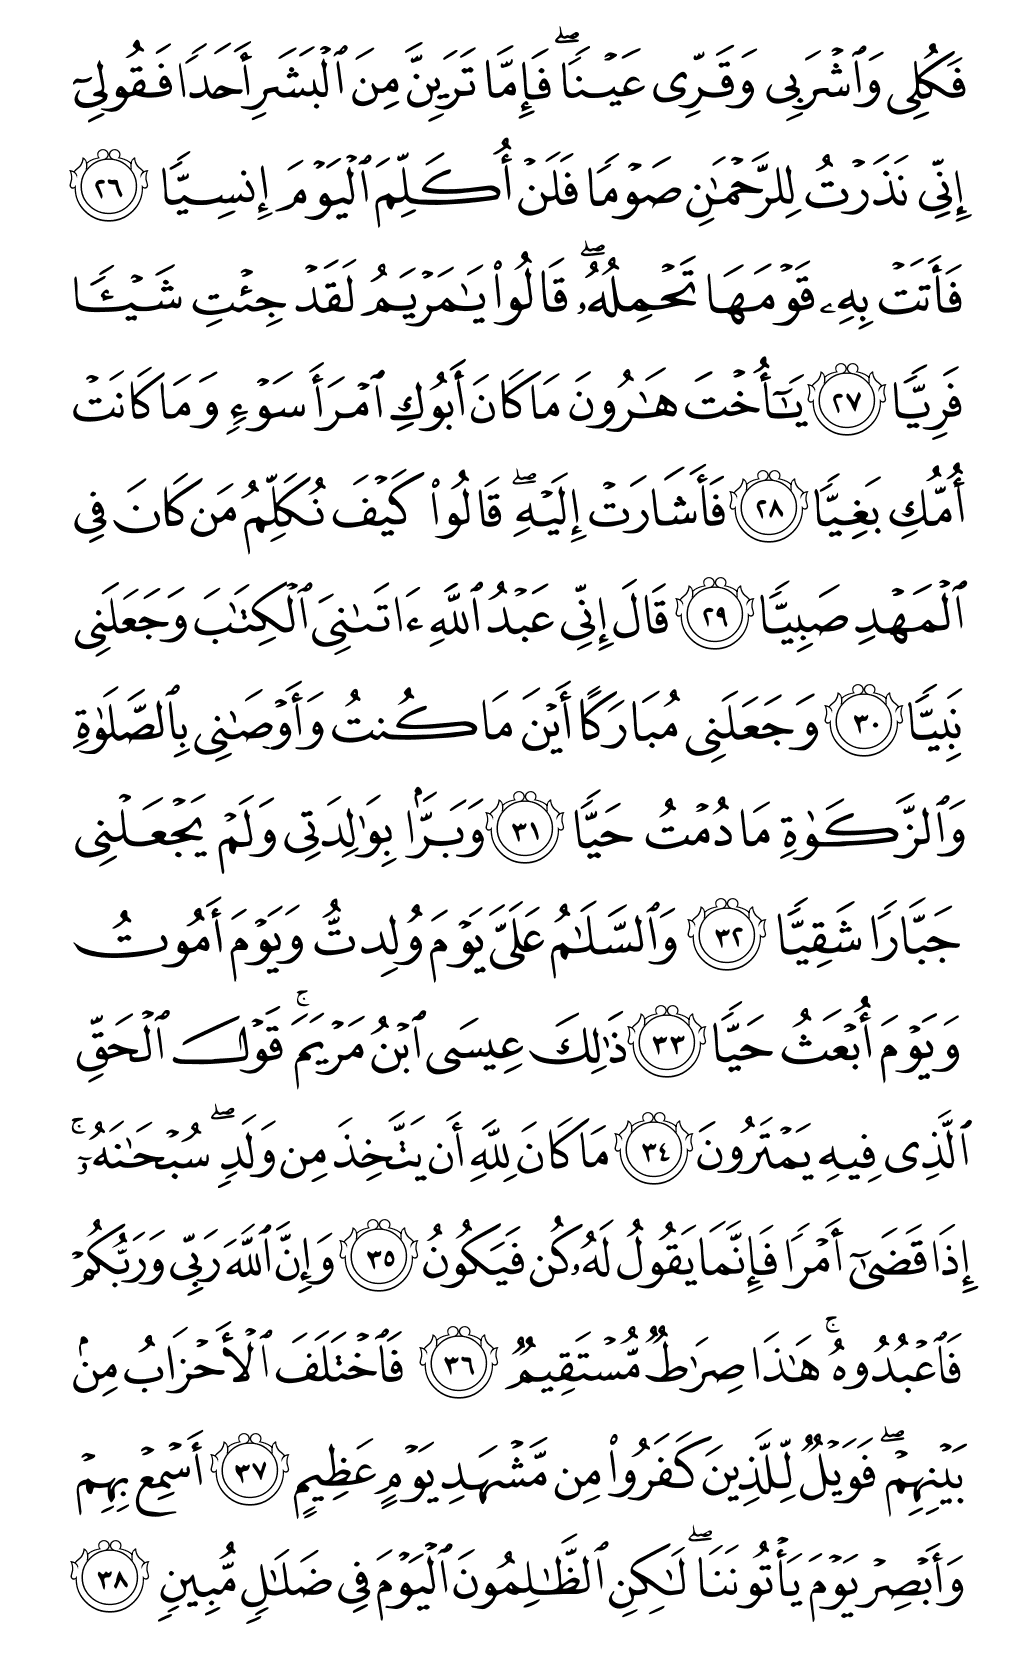 الصفحة رقم 307 من القرآن الكريم